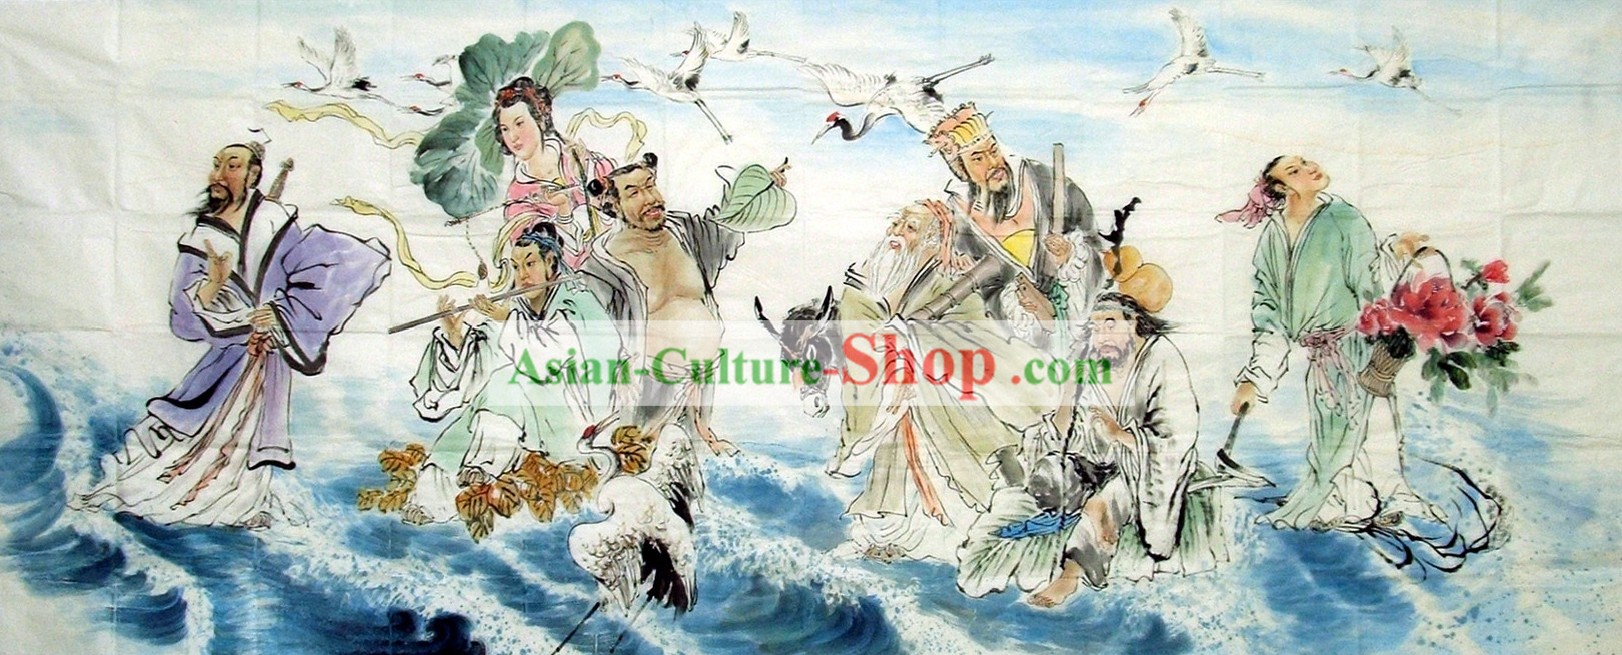 La peinture traditionnelle chinoise - Les Huit Immortels traversant la Mer